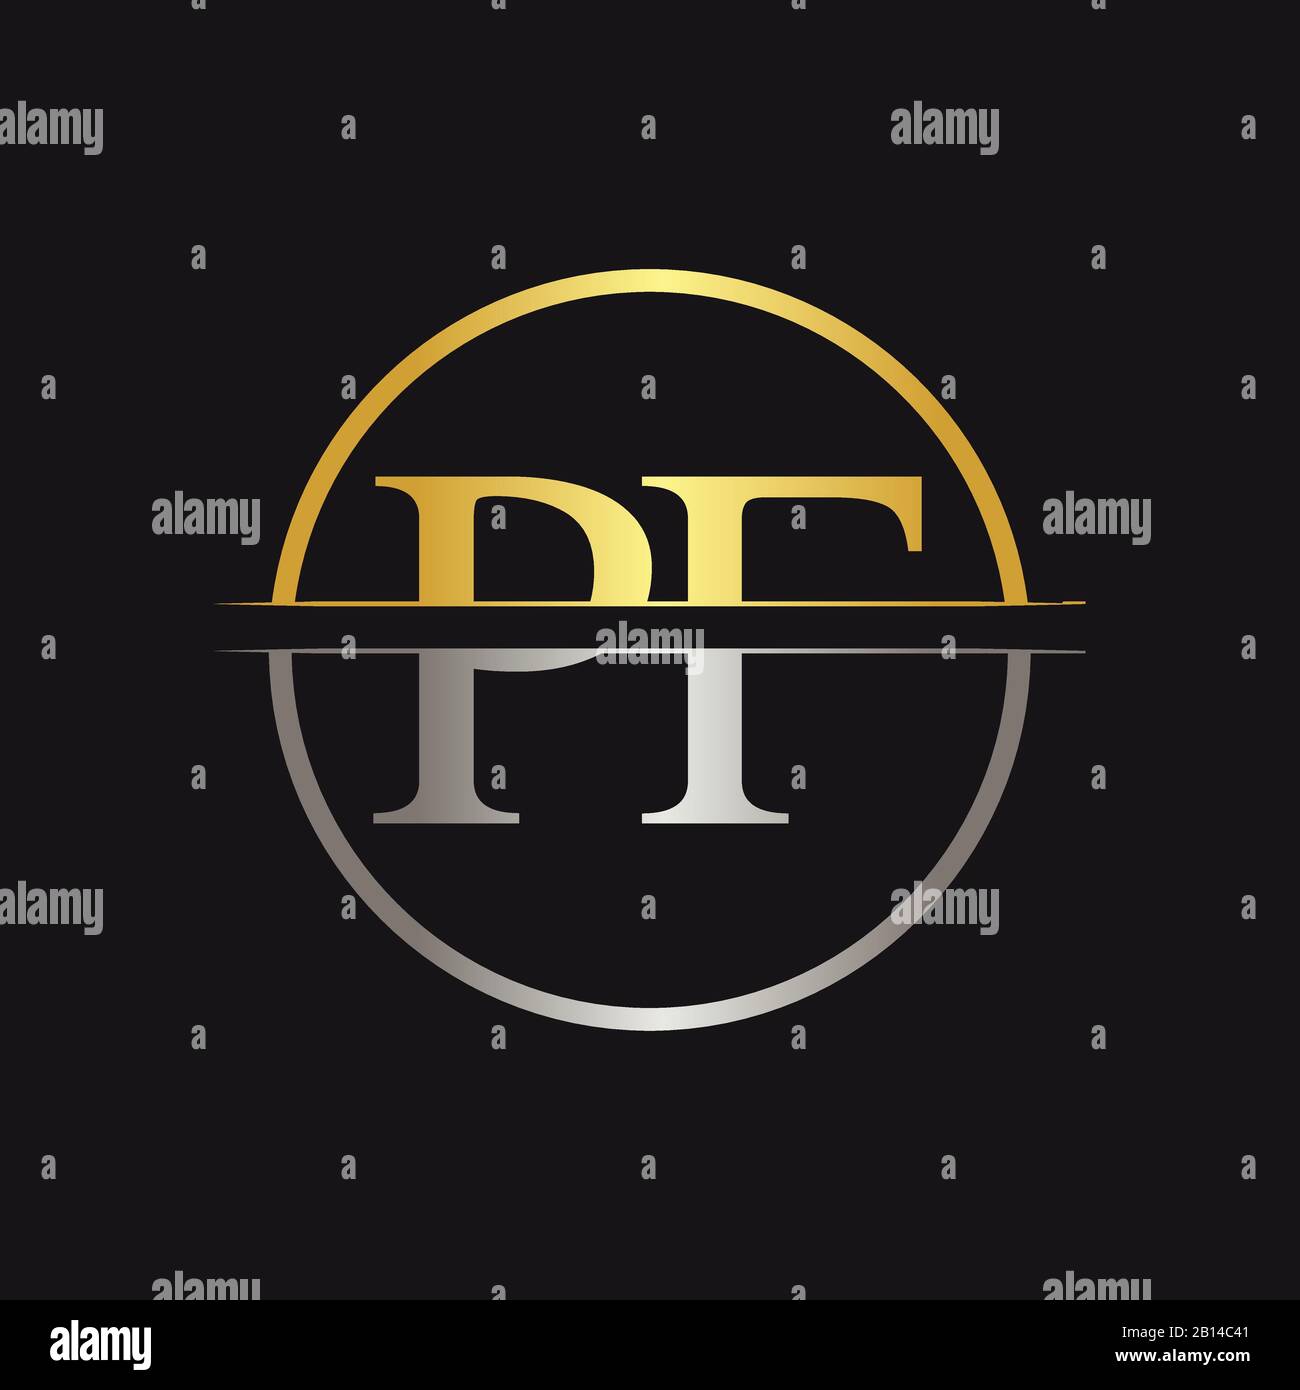 Initial Monogram Letter PF Logo Design Vector Template. PF Letter Logo Design Stock Vector